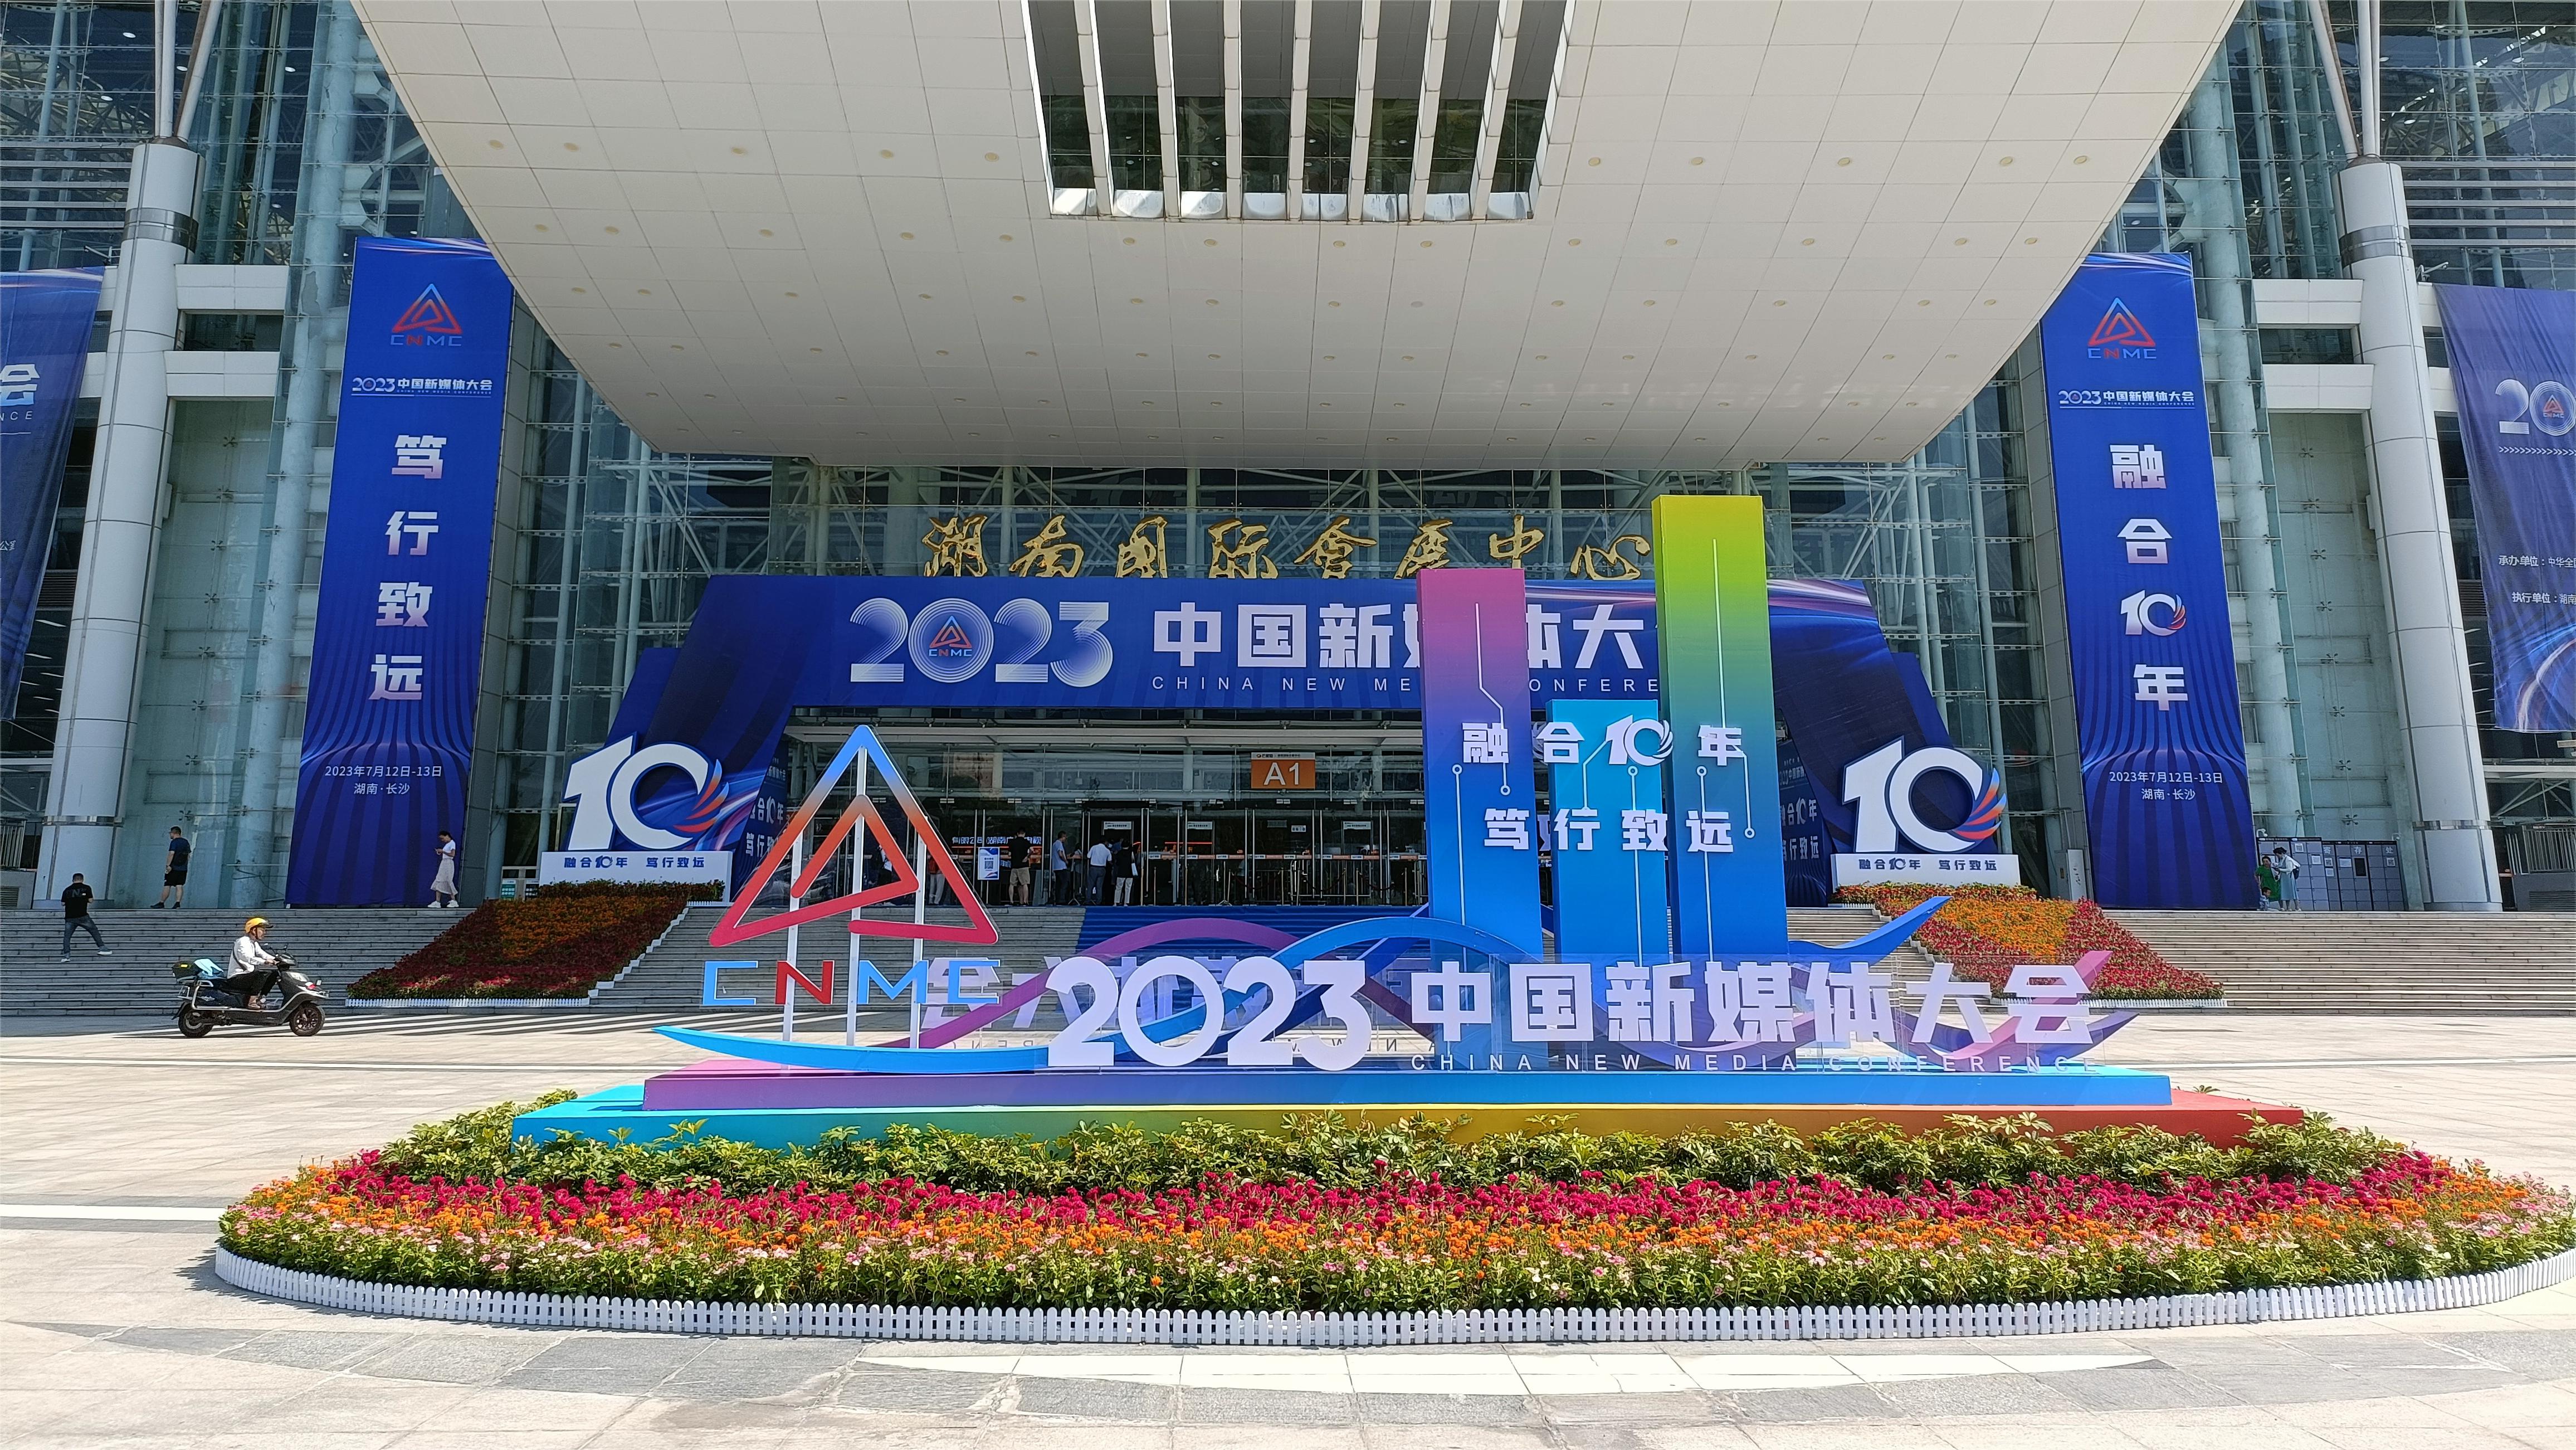 2023中國新媒體大會暨中國新媒體技術展——融合十年 篤行致遠